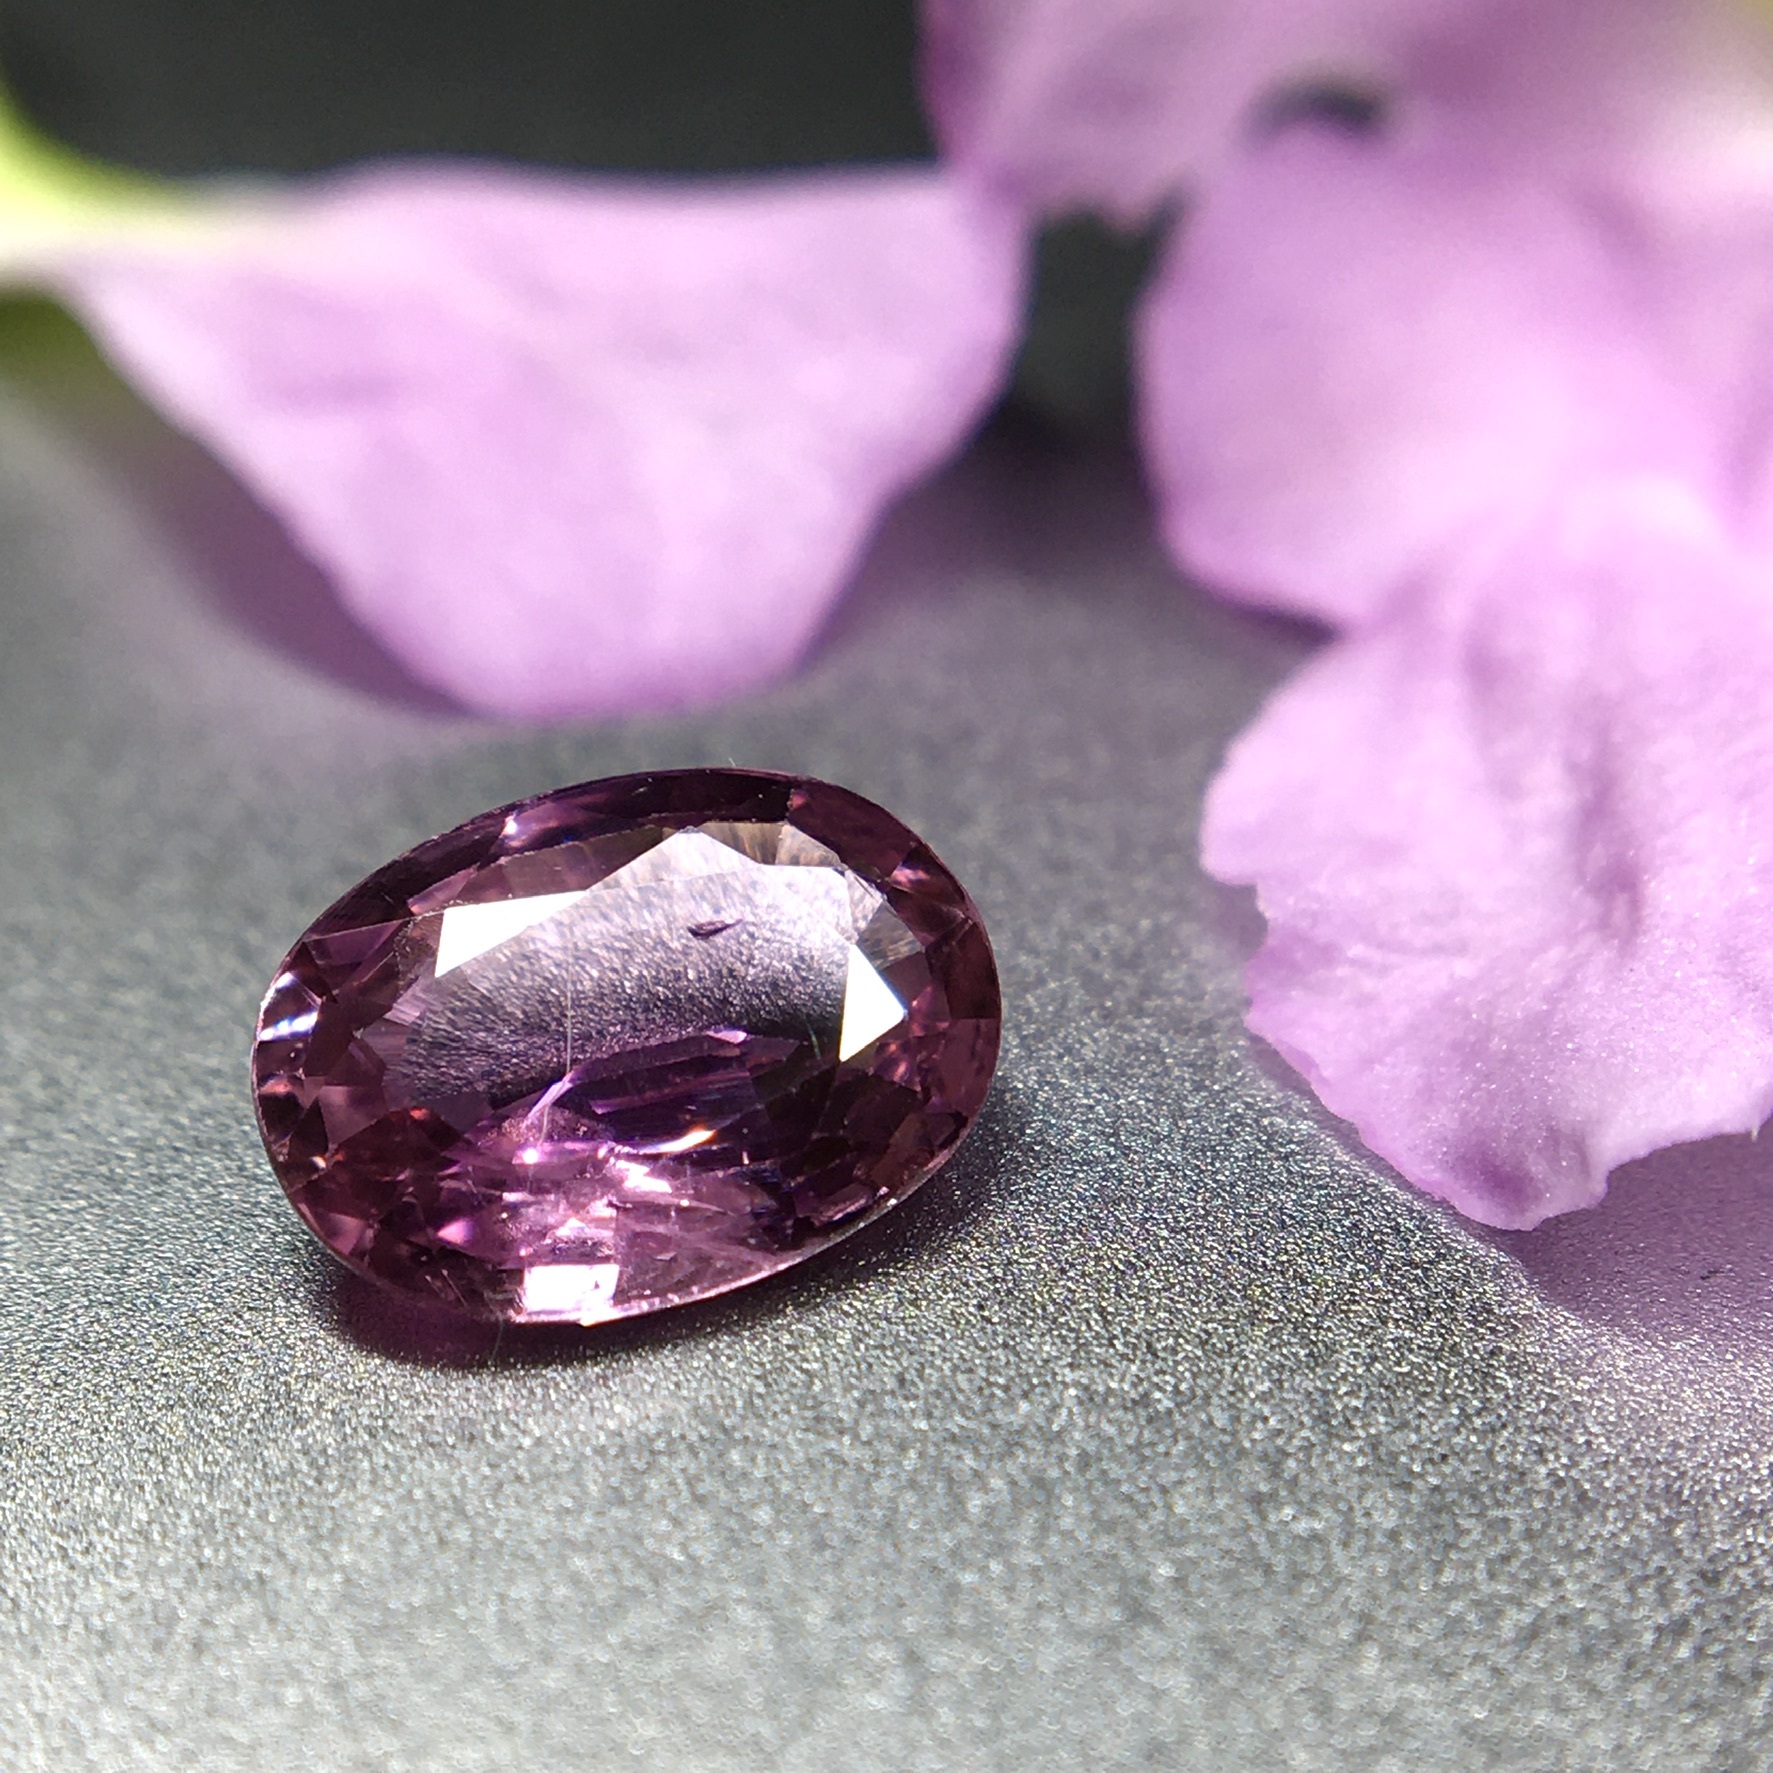 風光明媚な 桜色 の宝石 0 ct 天然パープルピンクサファイア Frederick S Gems Jewelry